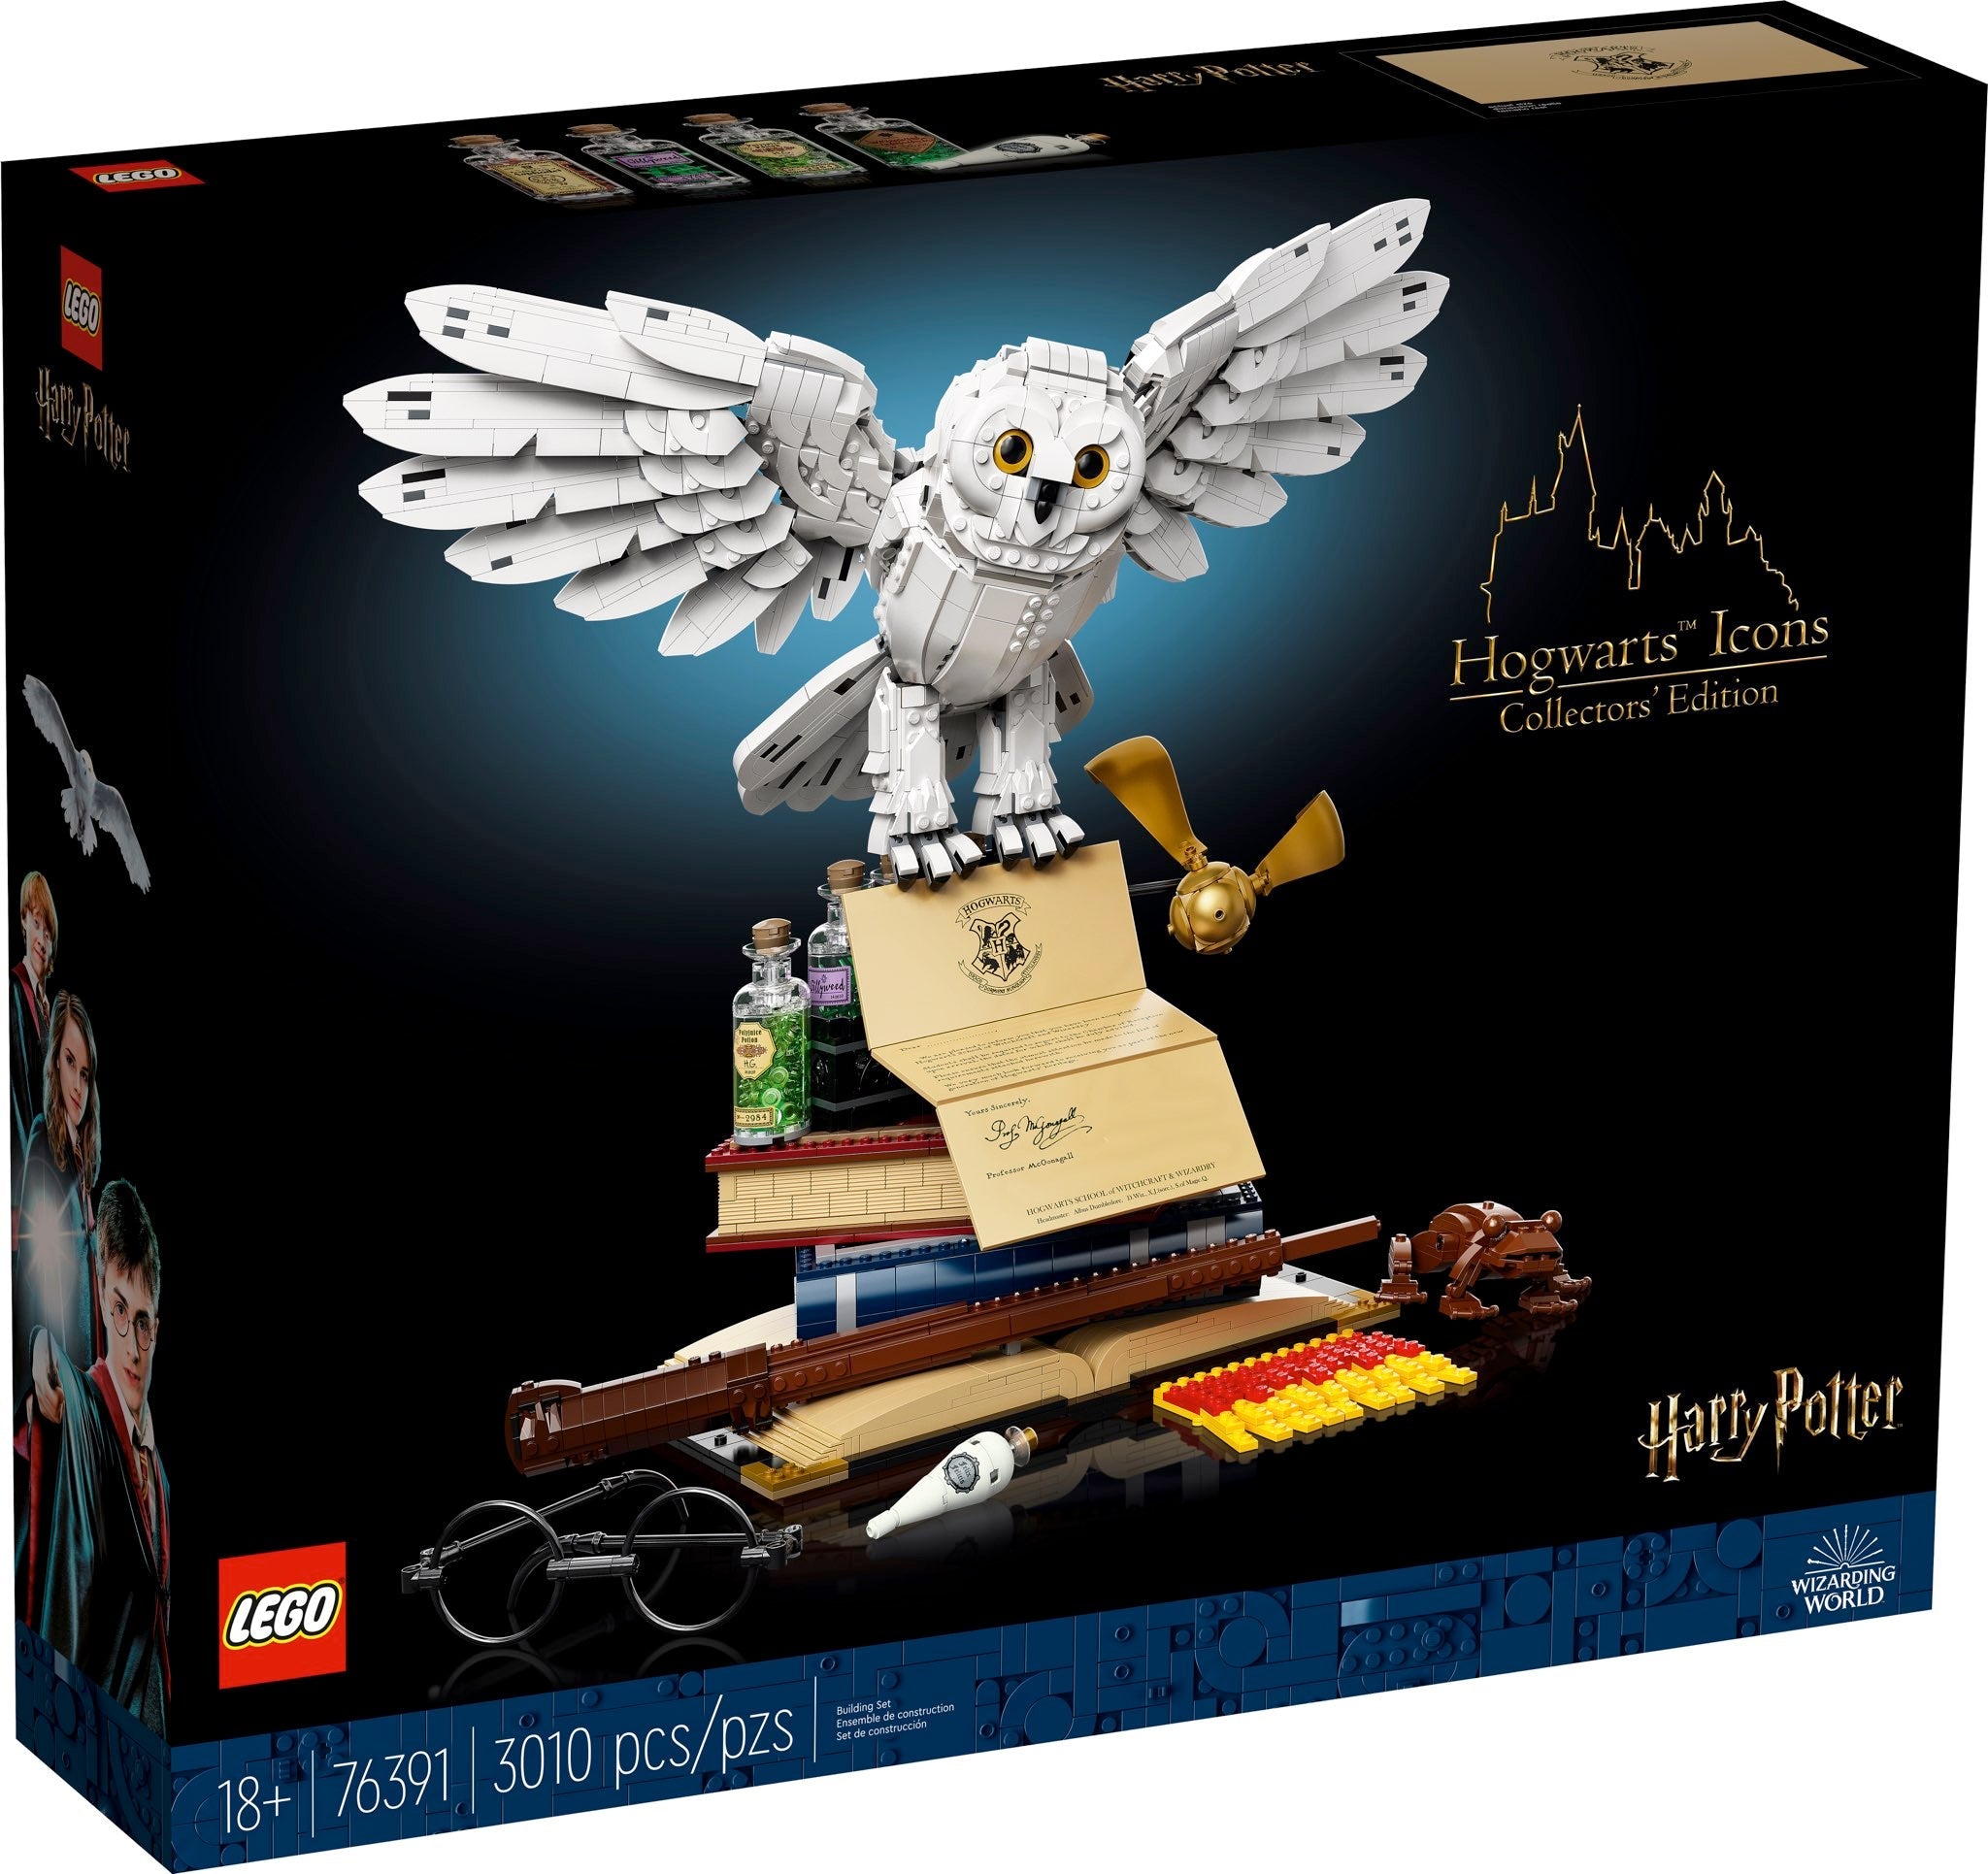 LEGO Harry Potter Hogwarts Ikonen, Sammler Edition (76391) - im GOLDSTIEN.SHOP verfügbar mit Gratisversand ab Schweizer Lager! (5702016913415)